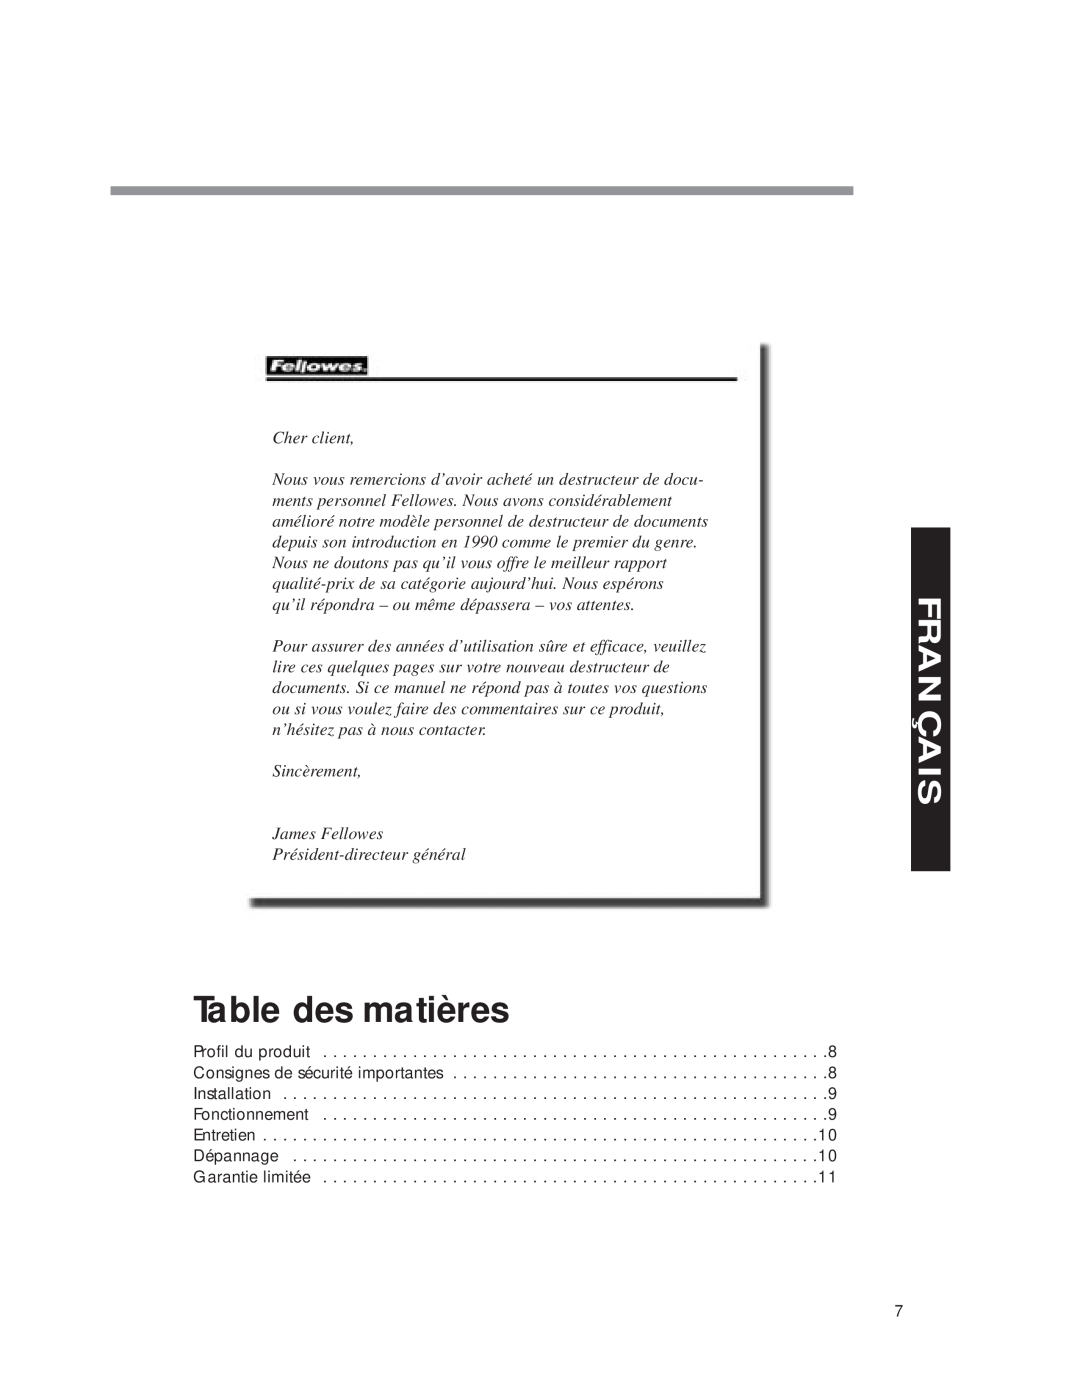 Fellowes DM8C manual Table des matières, Français, Cher client, Sincèrement James Fellowes Président-directeur général 